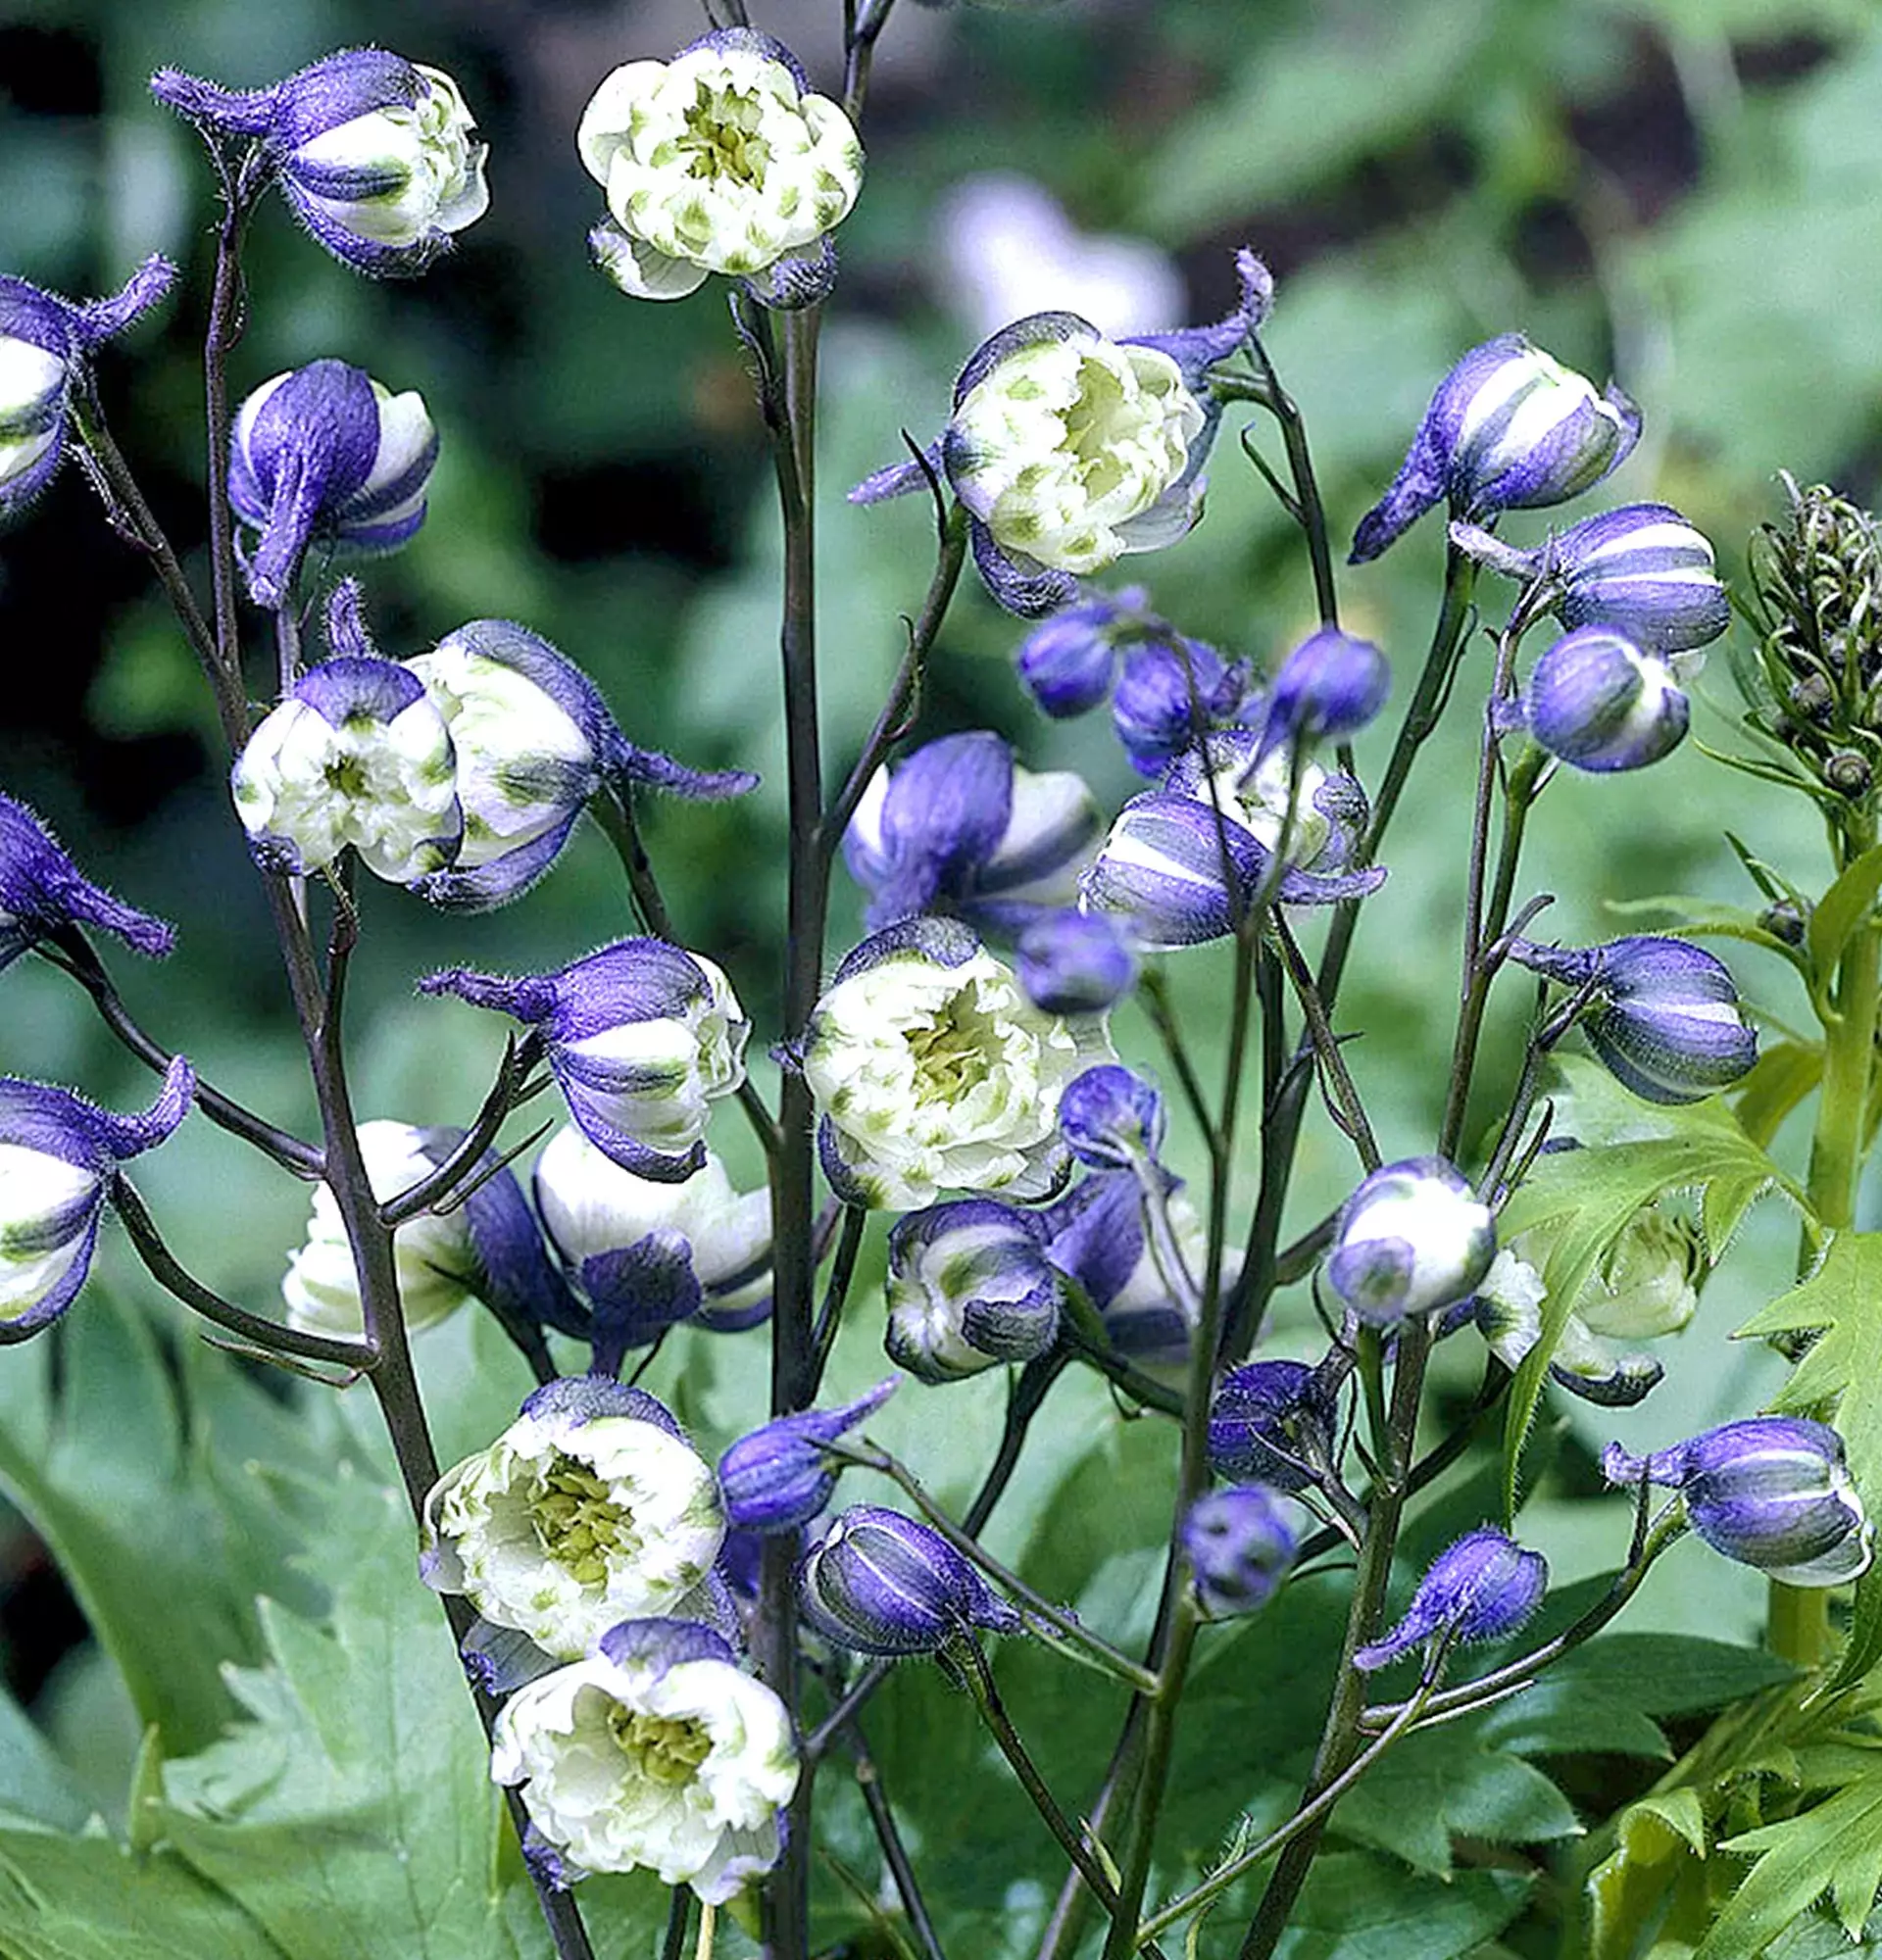 Delphinium white-violet photo - spur